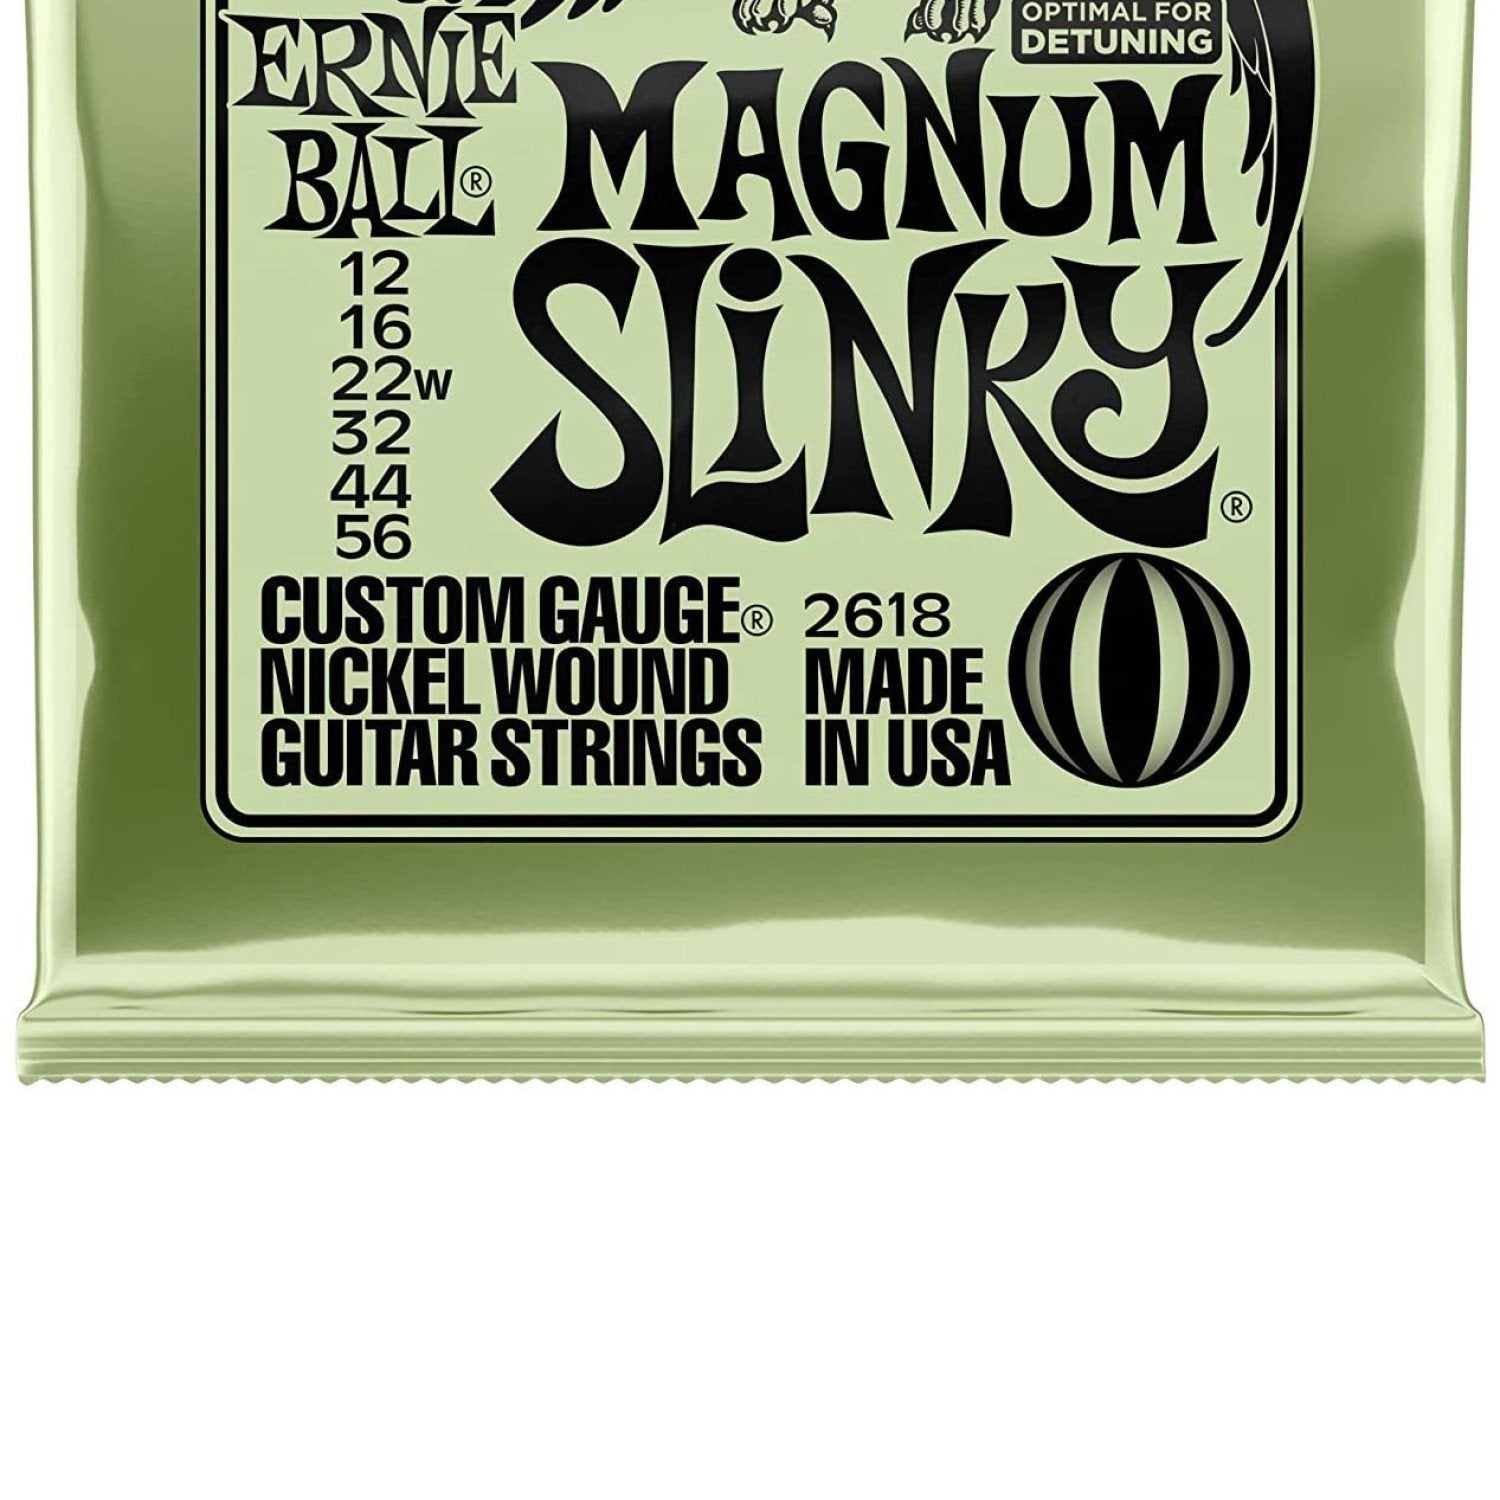 Ernie Ball Magnum Slinky Nickel Wound Guitar String Set, .012 - .056